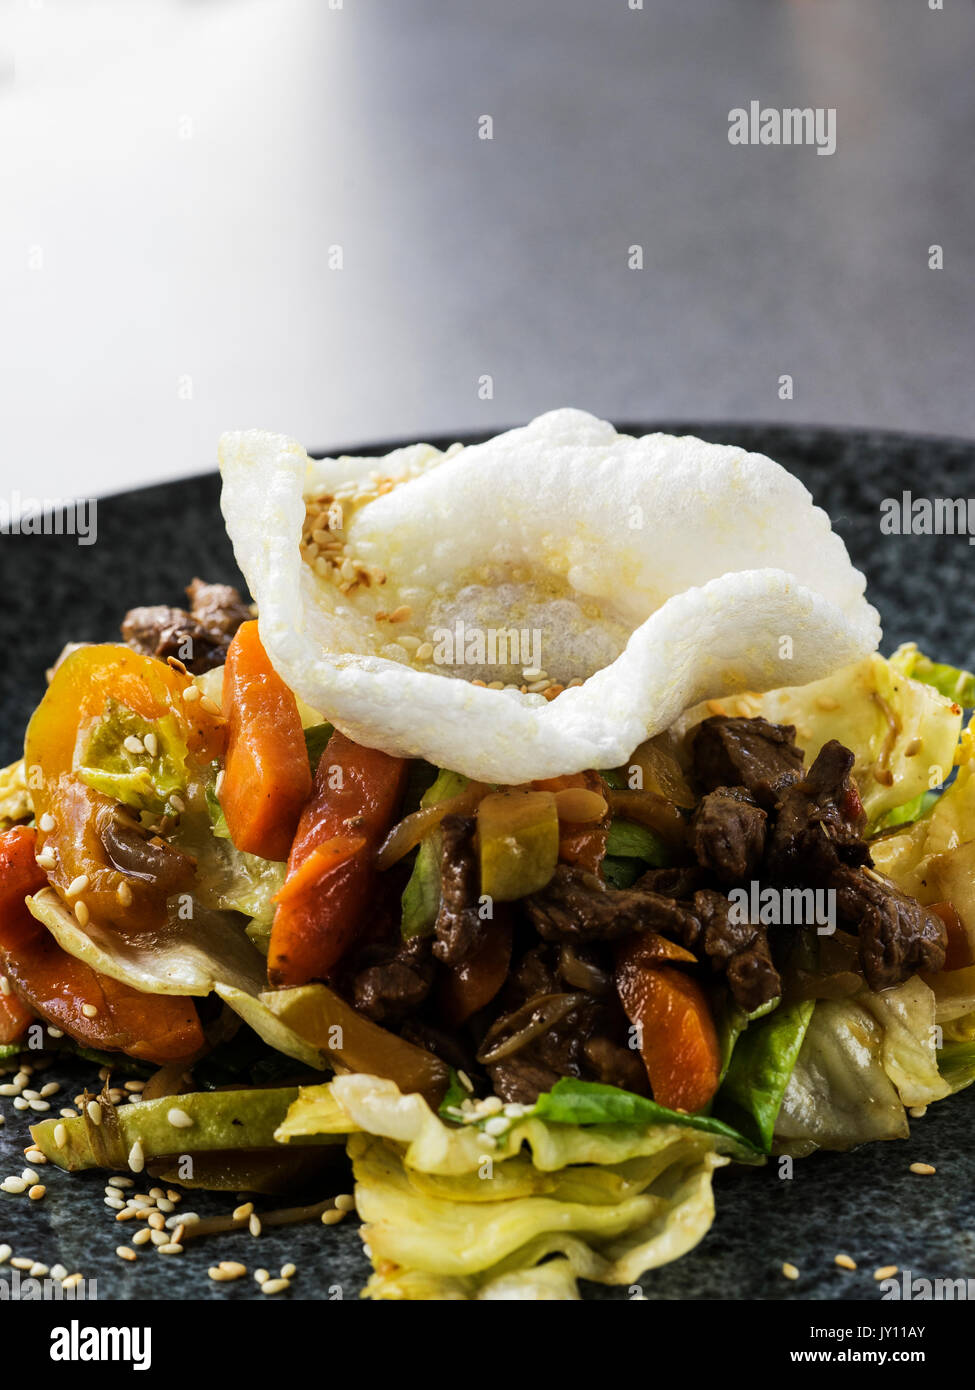 Salade asiatique chaude avec steak haché Photo Stock - Alamy